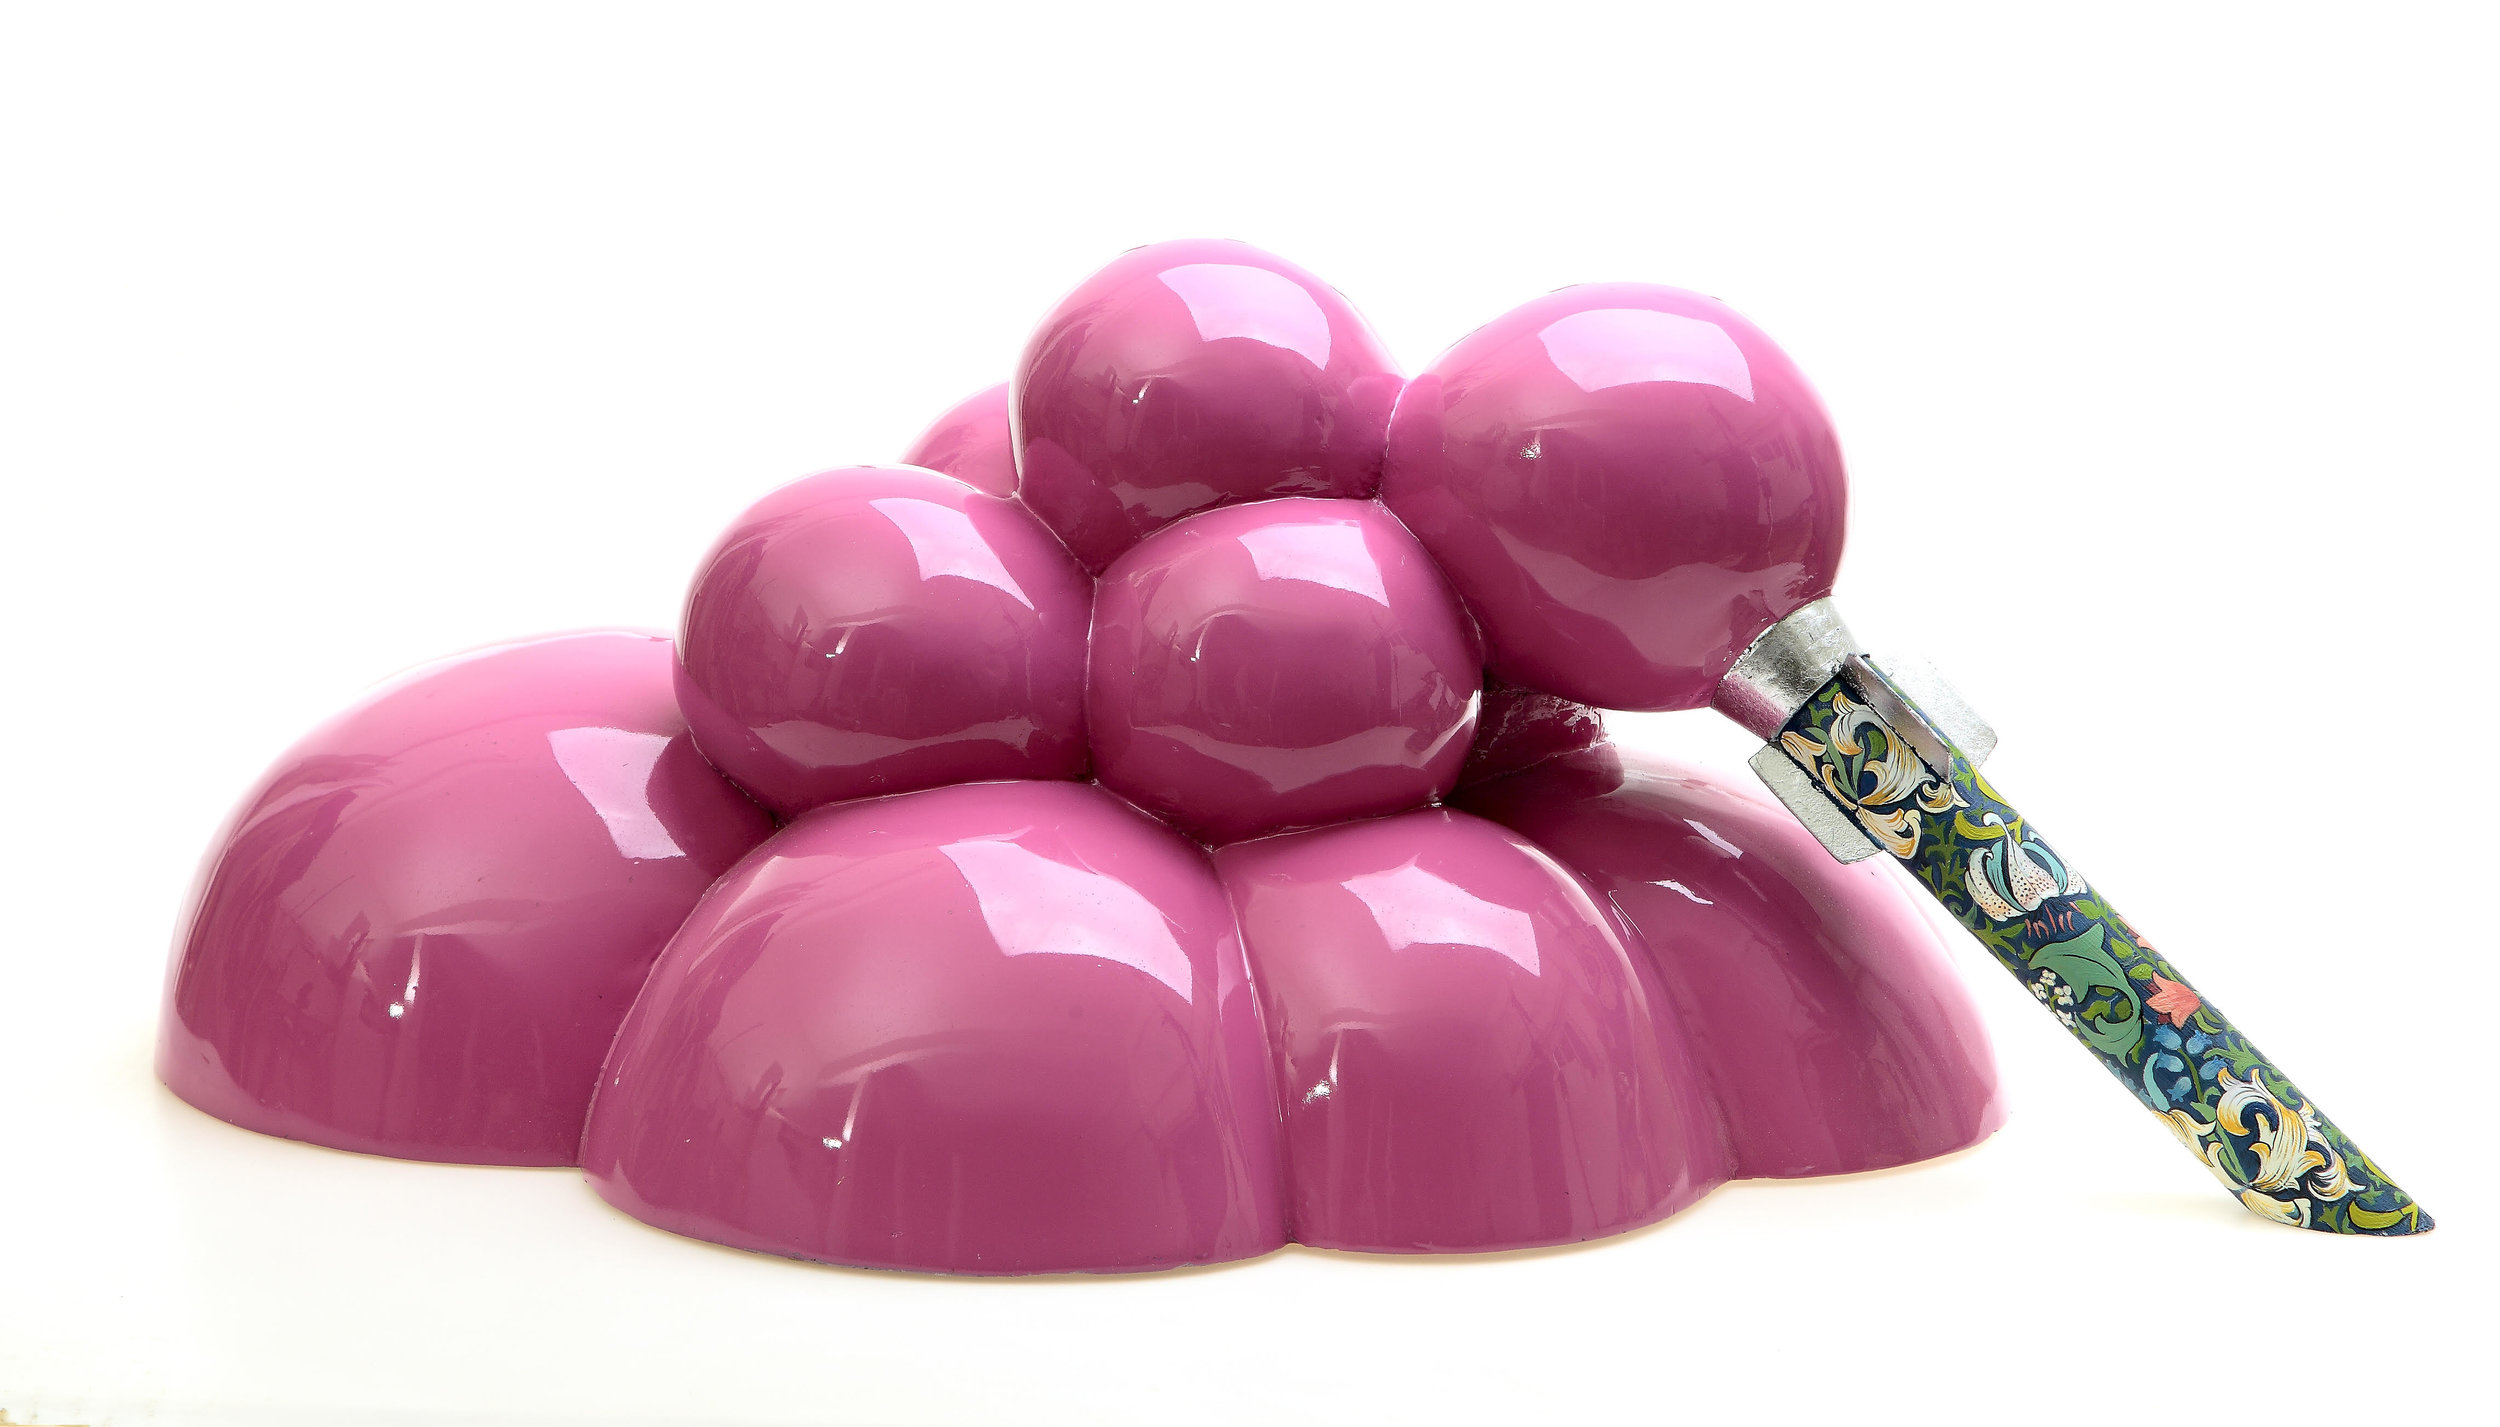 Pink Bubbles, 2012